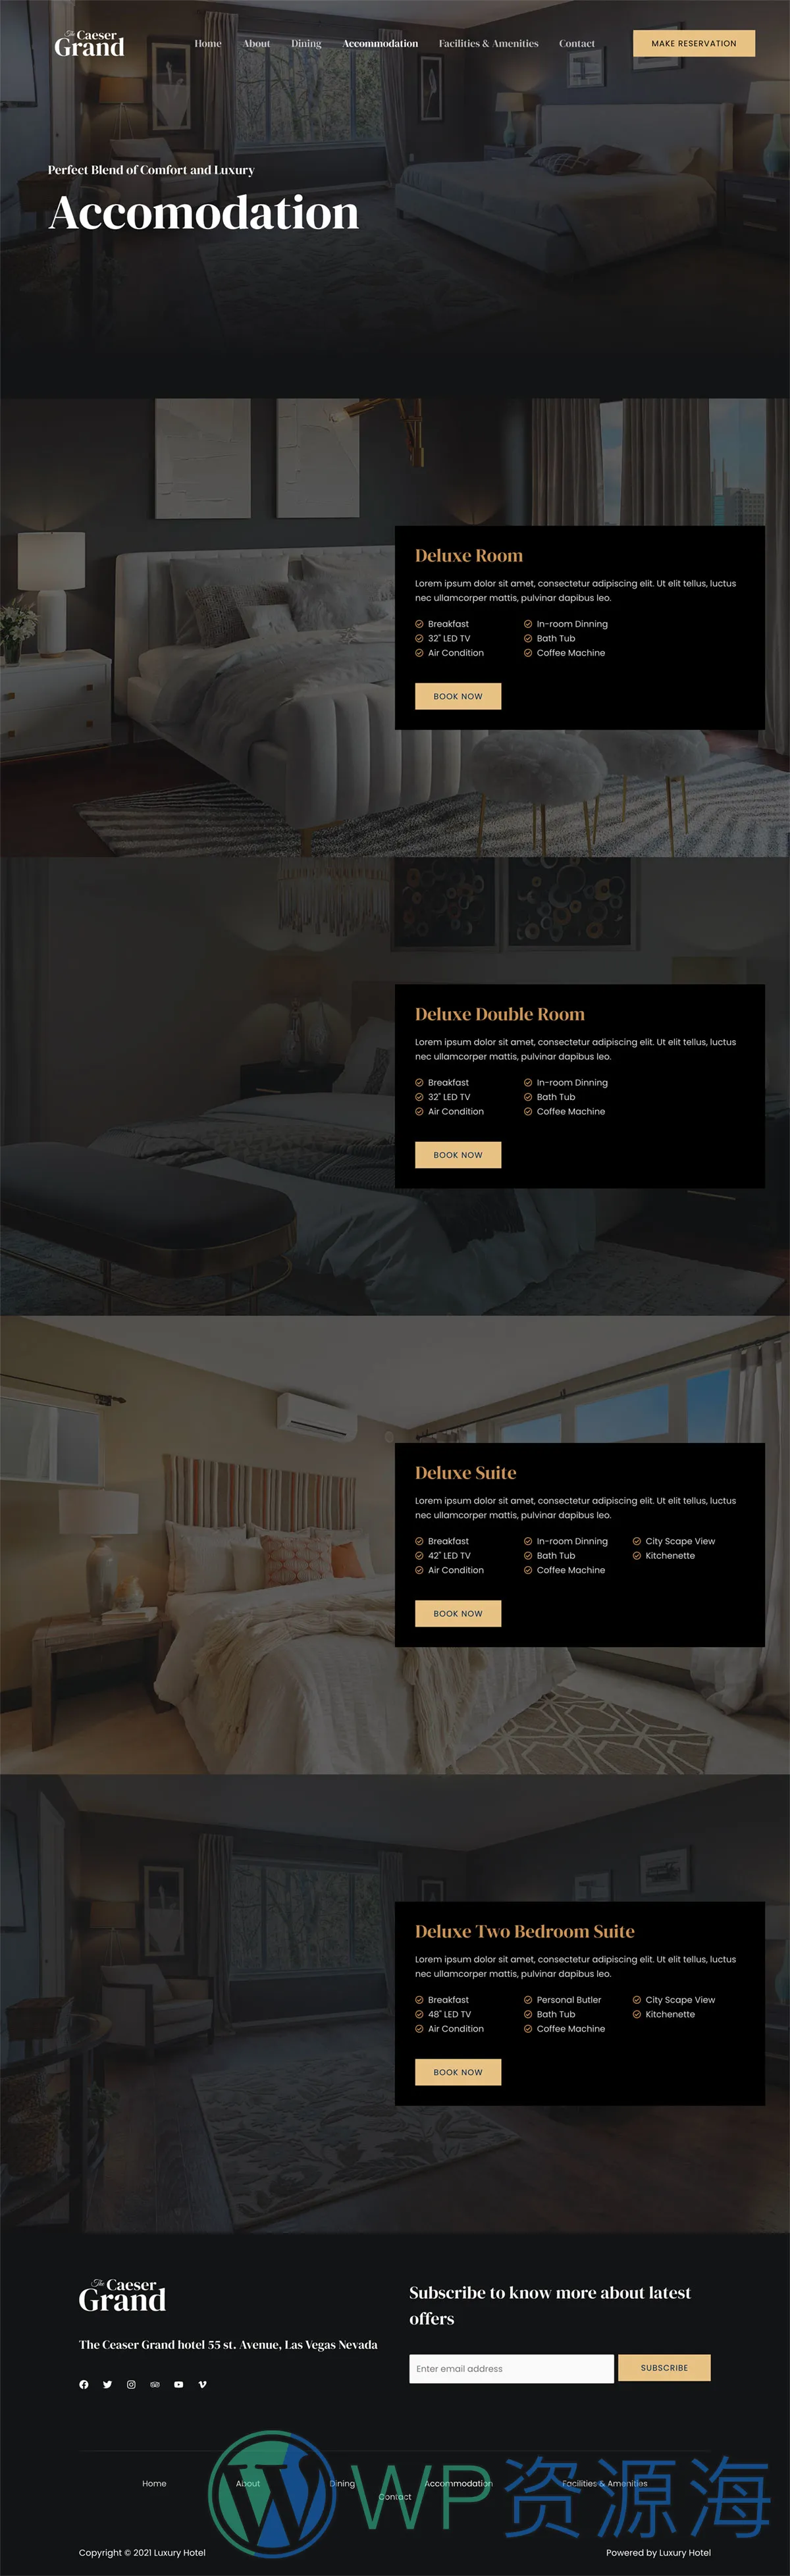 整站模板_豪华酒店星级酒店网站成品模板_一键导入式快速建站模板插图3-WordPress资源海